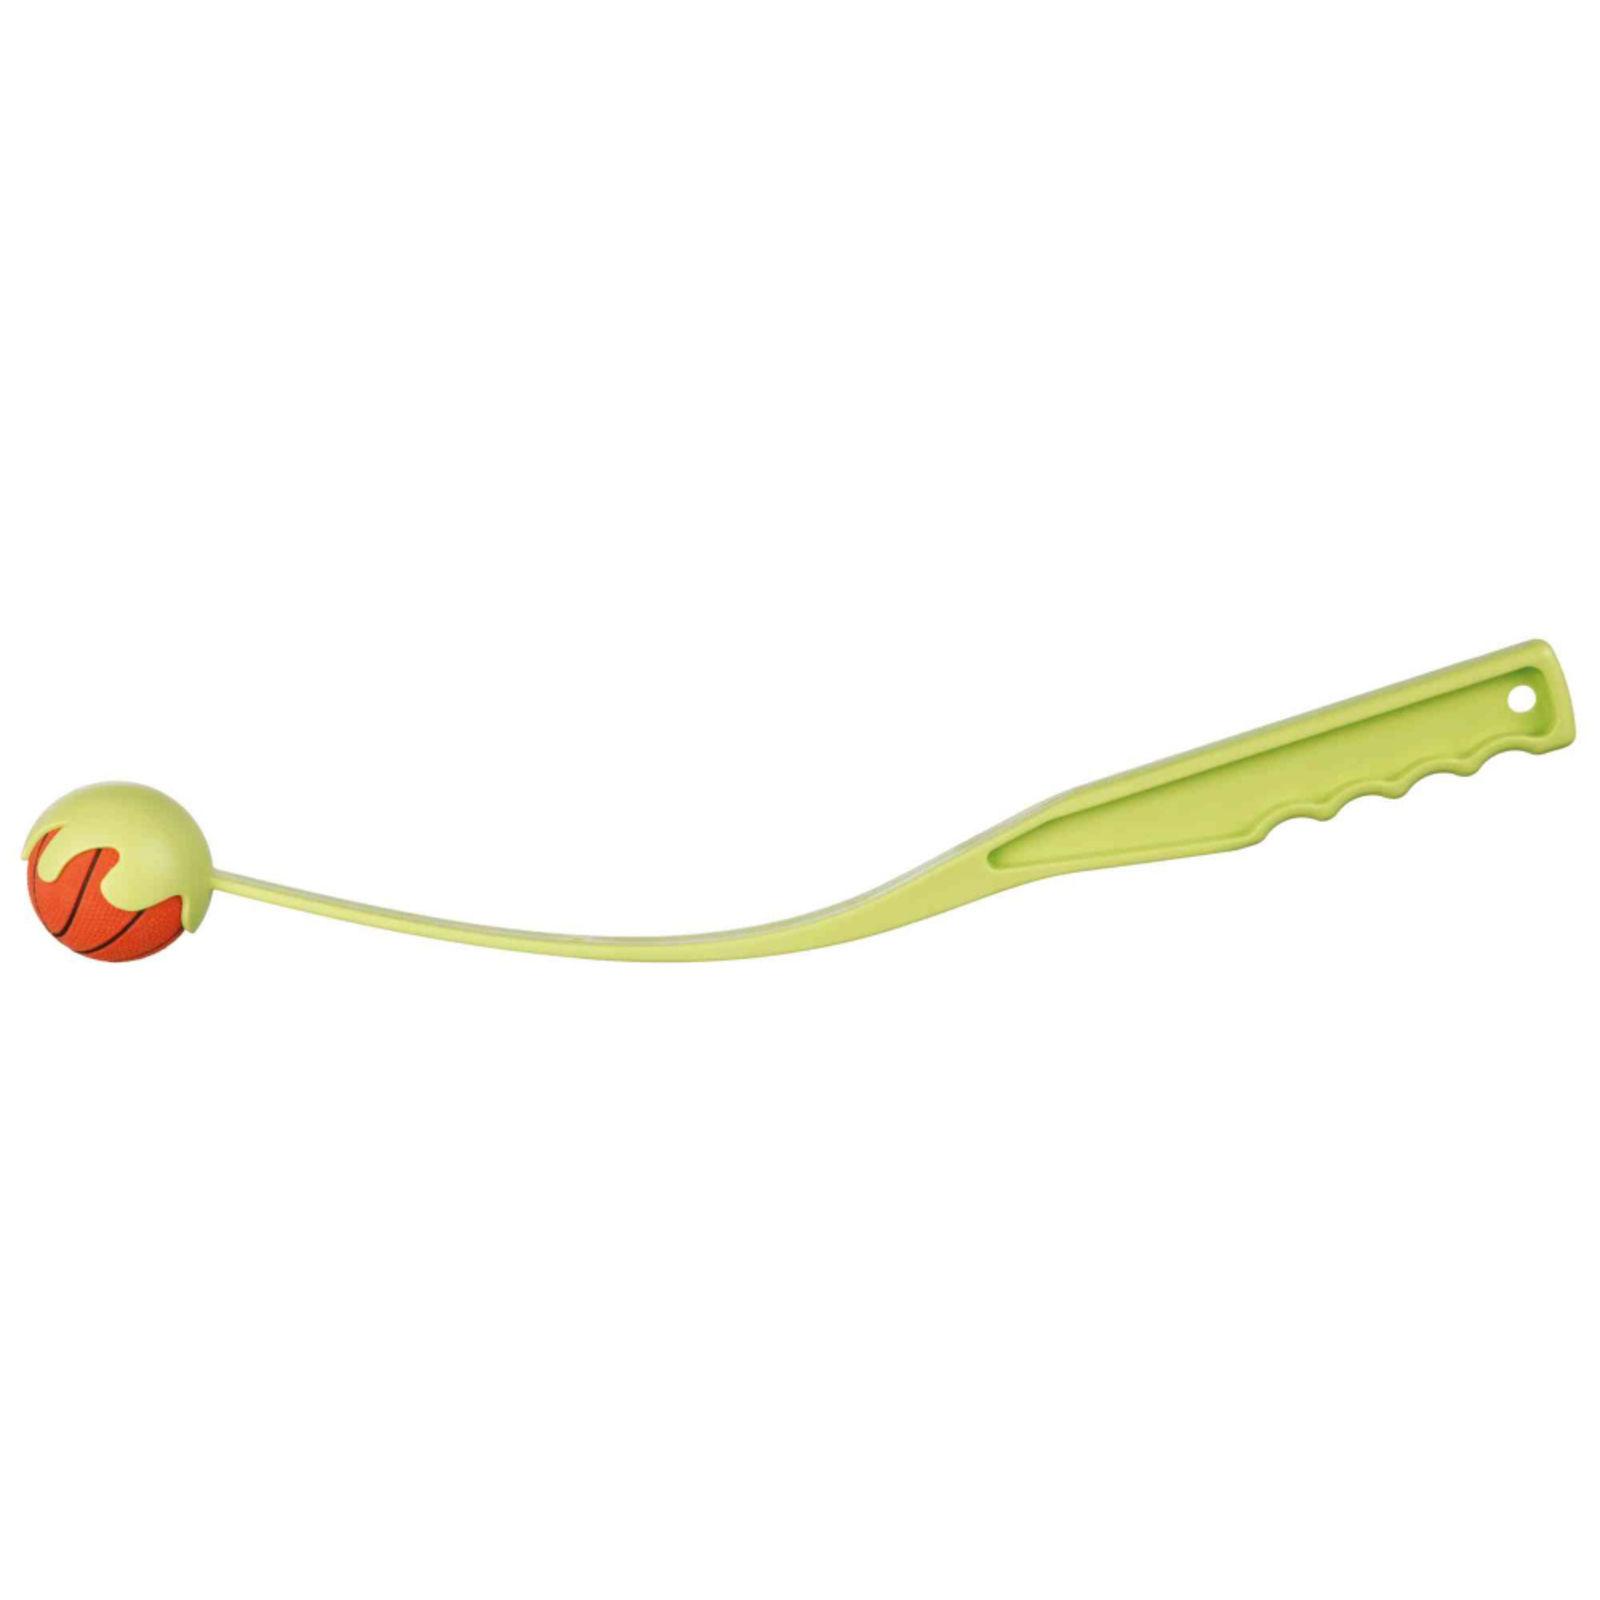 Selected image for TRIXIE Mali štap za tenisku lopticu šareni